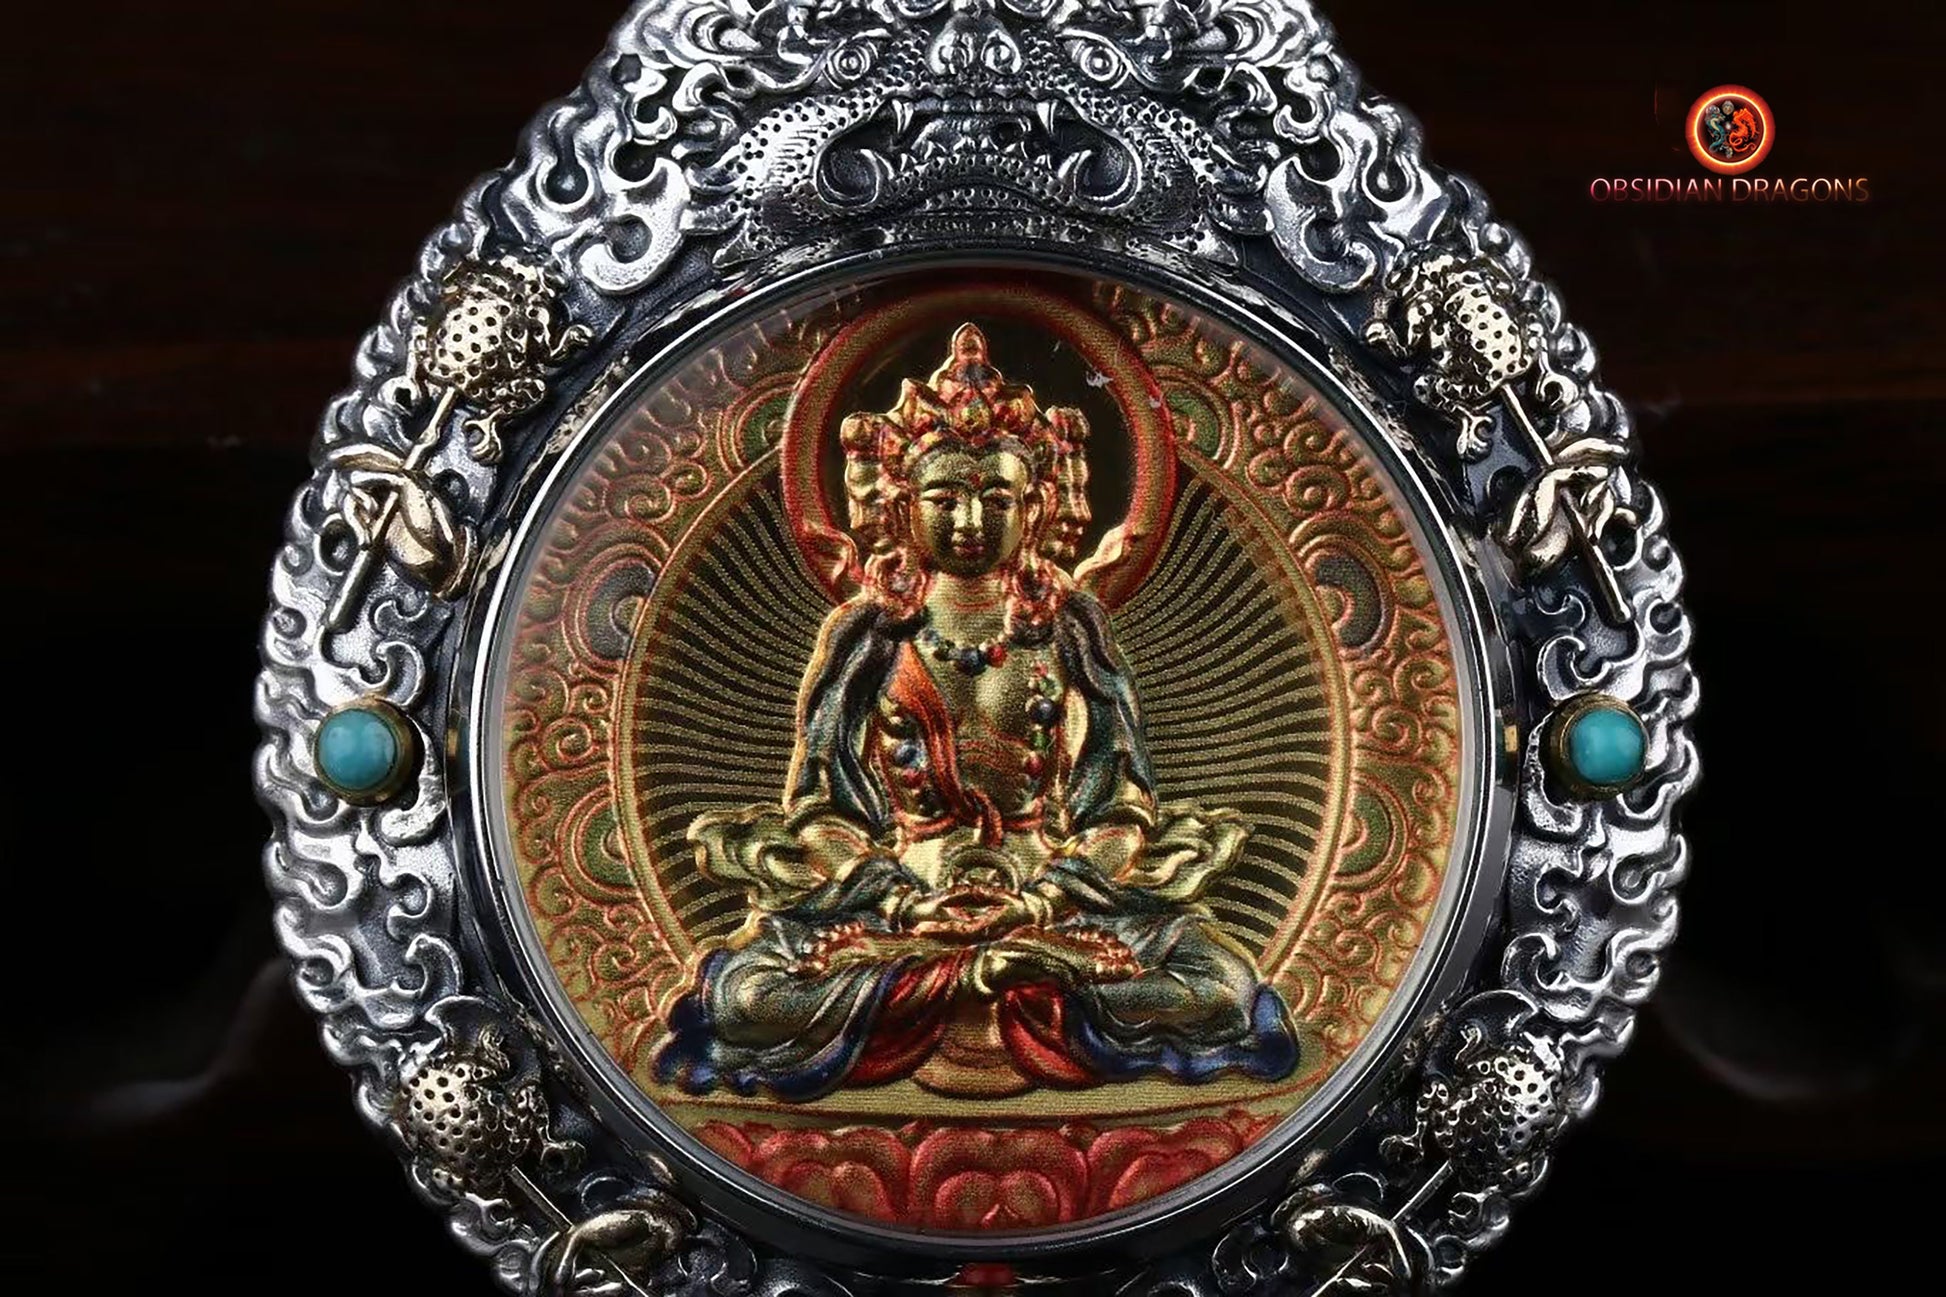 pendentif bouddha. protection de Vairocana. Authentique ghau avec tangka peint sur or. Amulette bouddhiste vajrayana - obsidian dragon